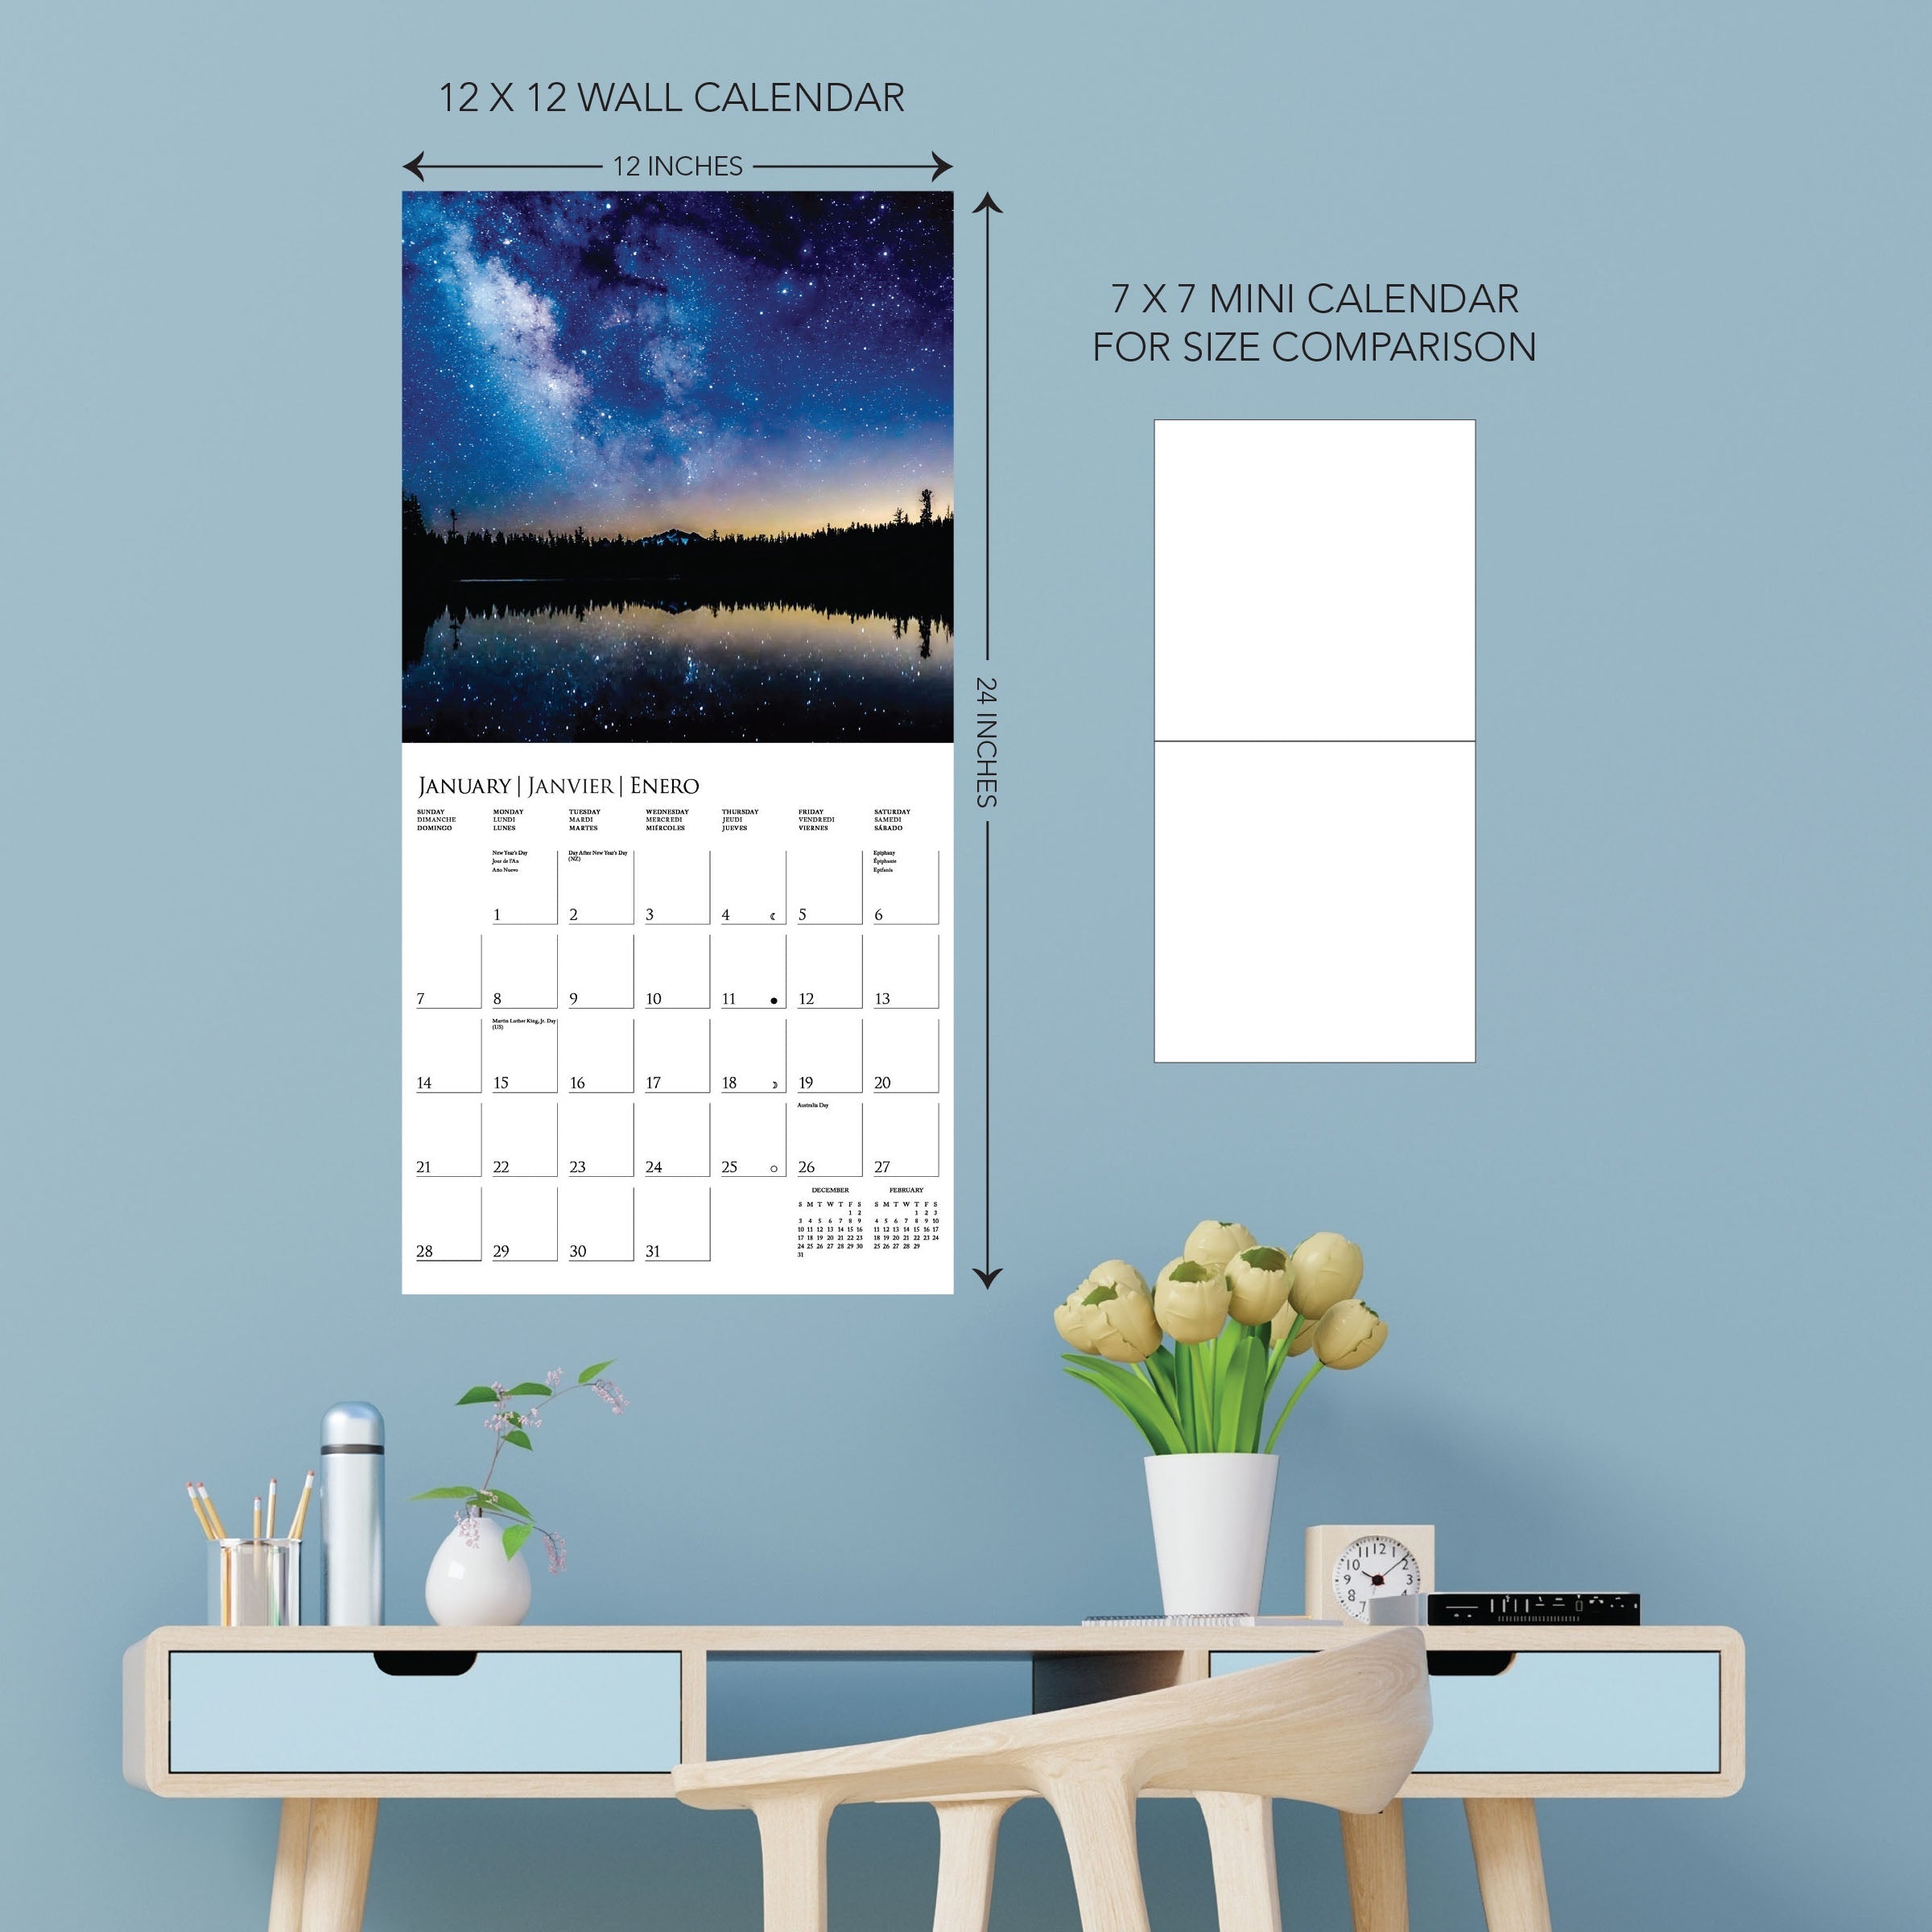 Stargazing 2024 Wall Calendar    